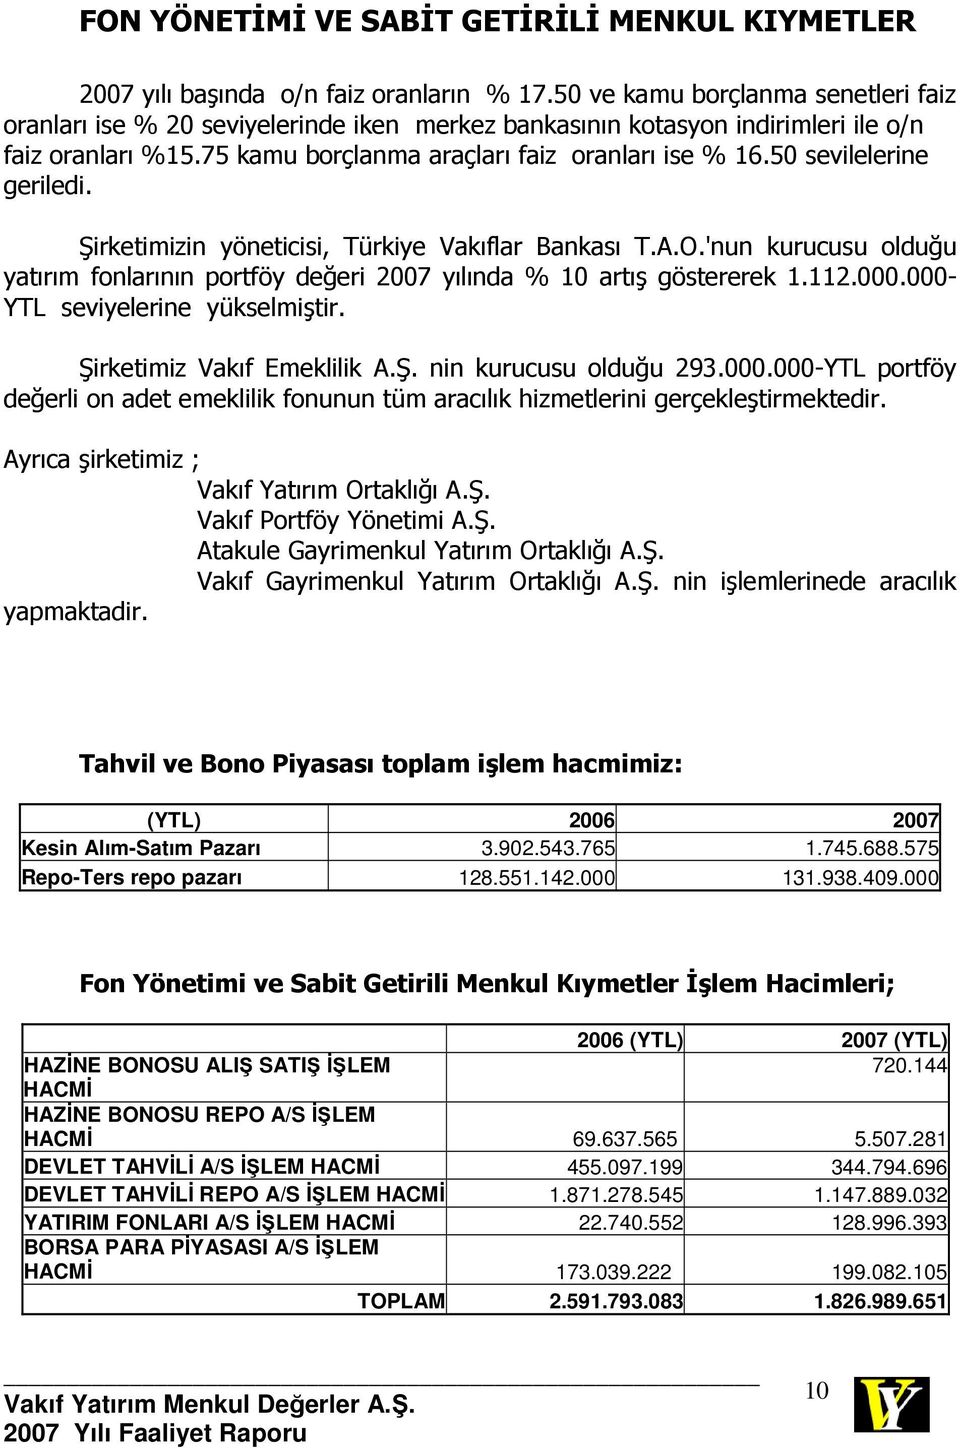 50 sevilelerine geriledi. Şirketimizin yöneticisi, Türkiye Vakıflar Bankası T.A.O.'nun kurucusu olduğu yatırım fonlarının portföy değeri 2007 yılında % 10 artış göstererek 1.112.000.